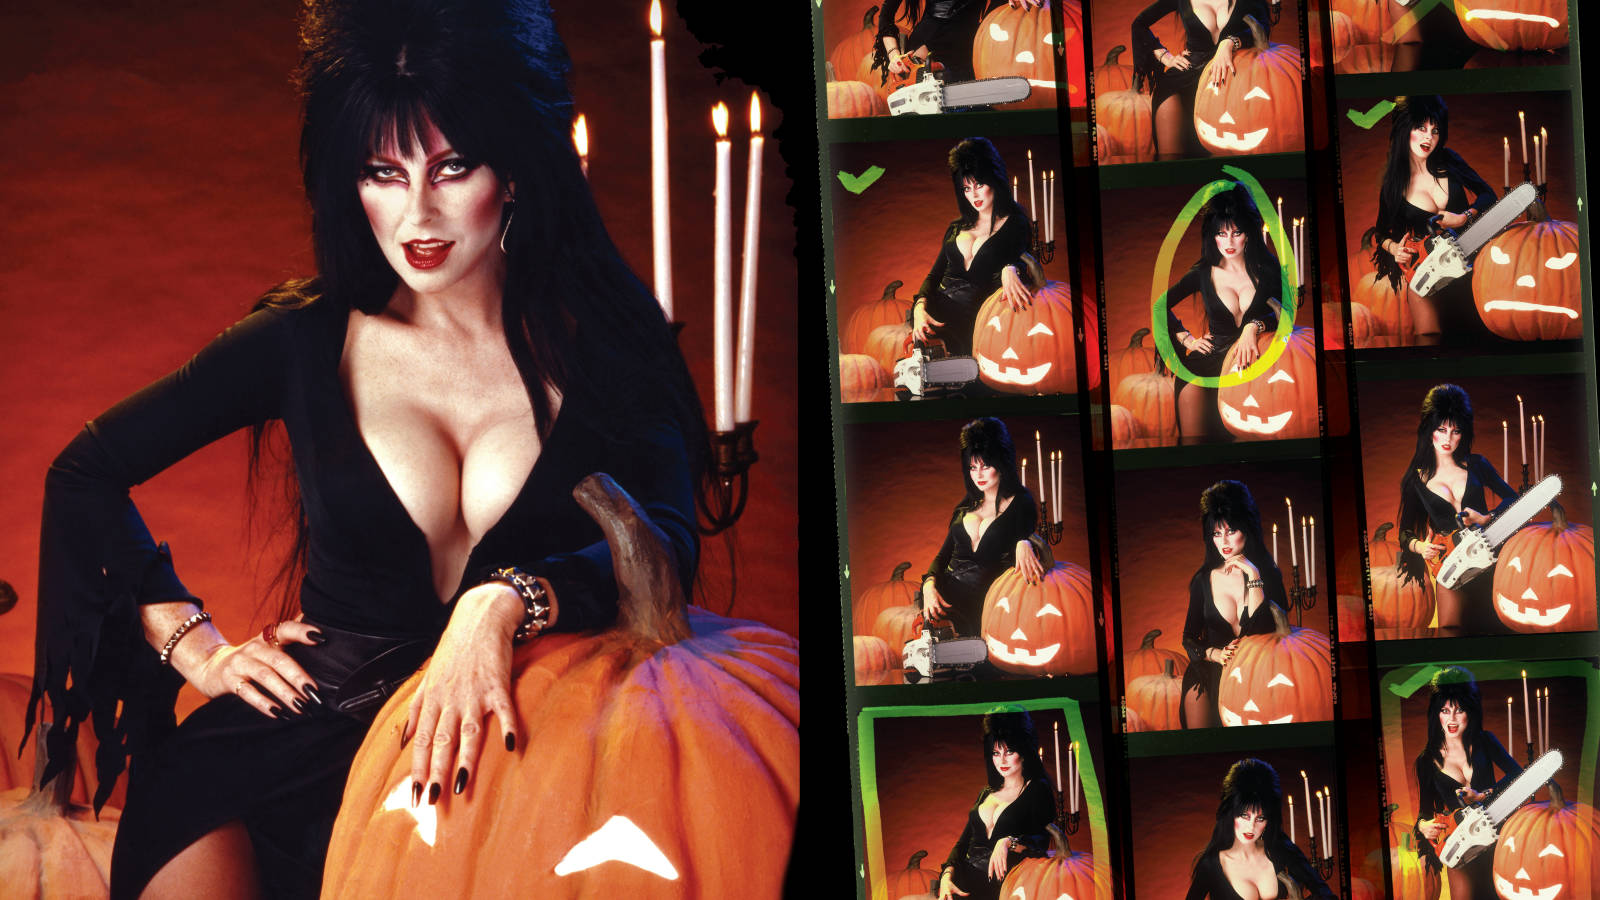 Elvira, Mistress Of The Dark, Recalls Her Sort Of A Date With Elvis Presley